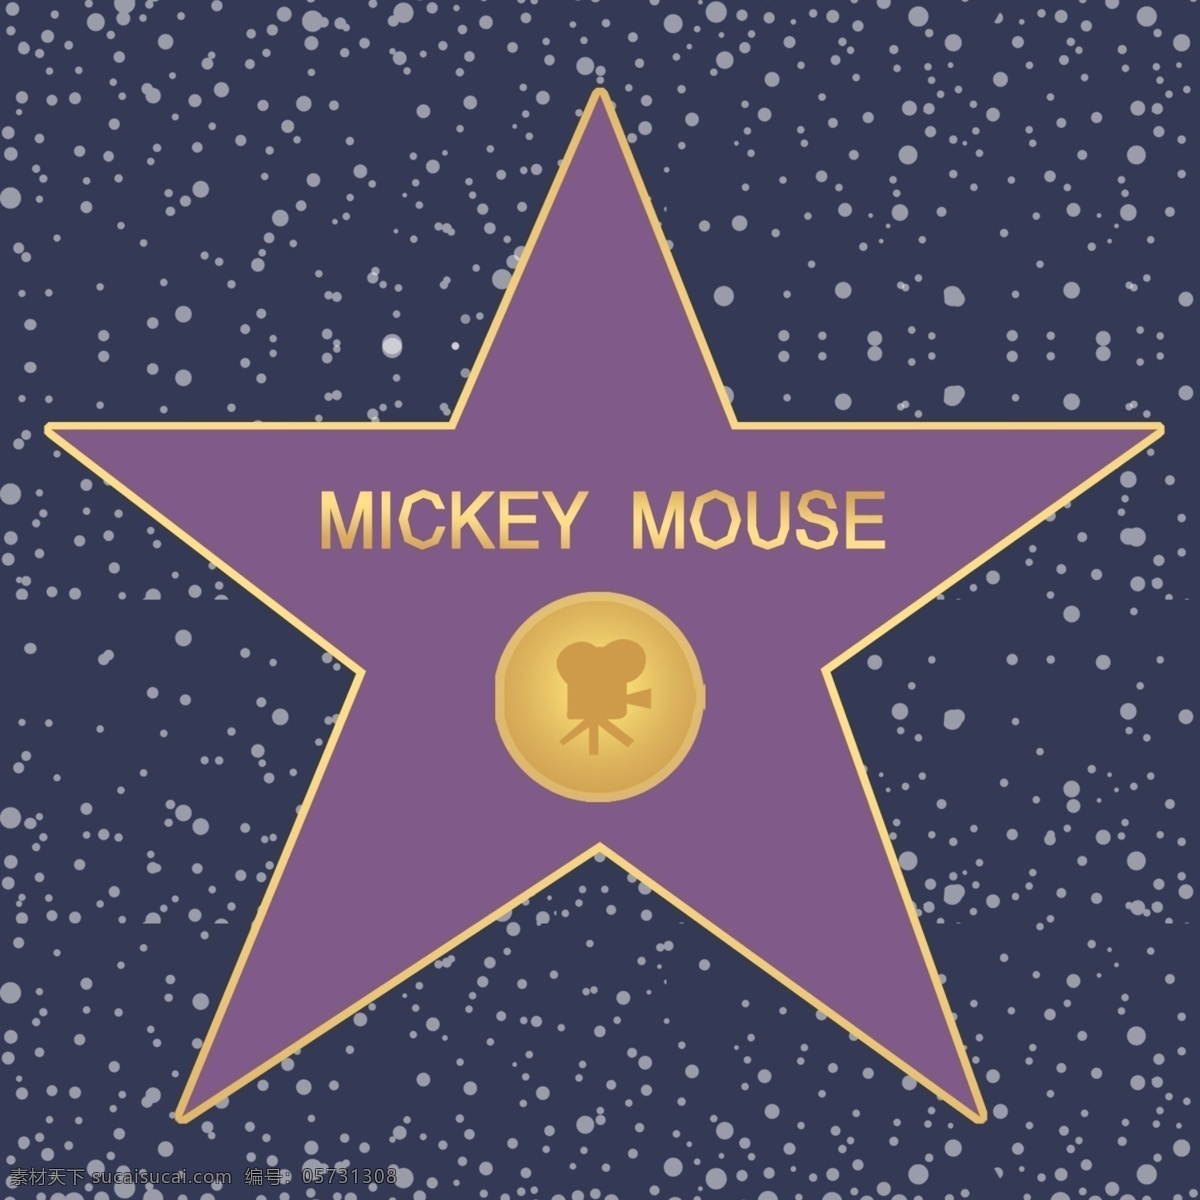 五角星地标 地标 慢摇吧 好莱坞 五角星 mickey mouse 风言叶语 其他模版 广告设计模板 源文件